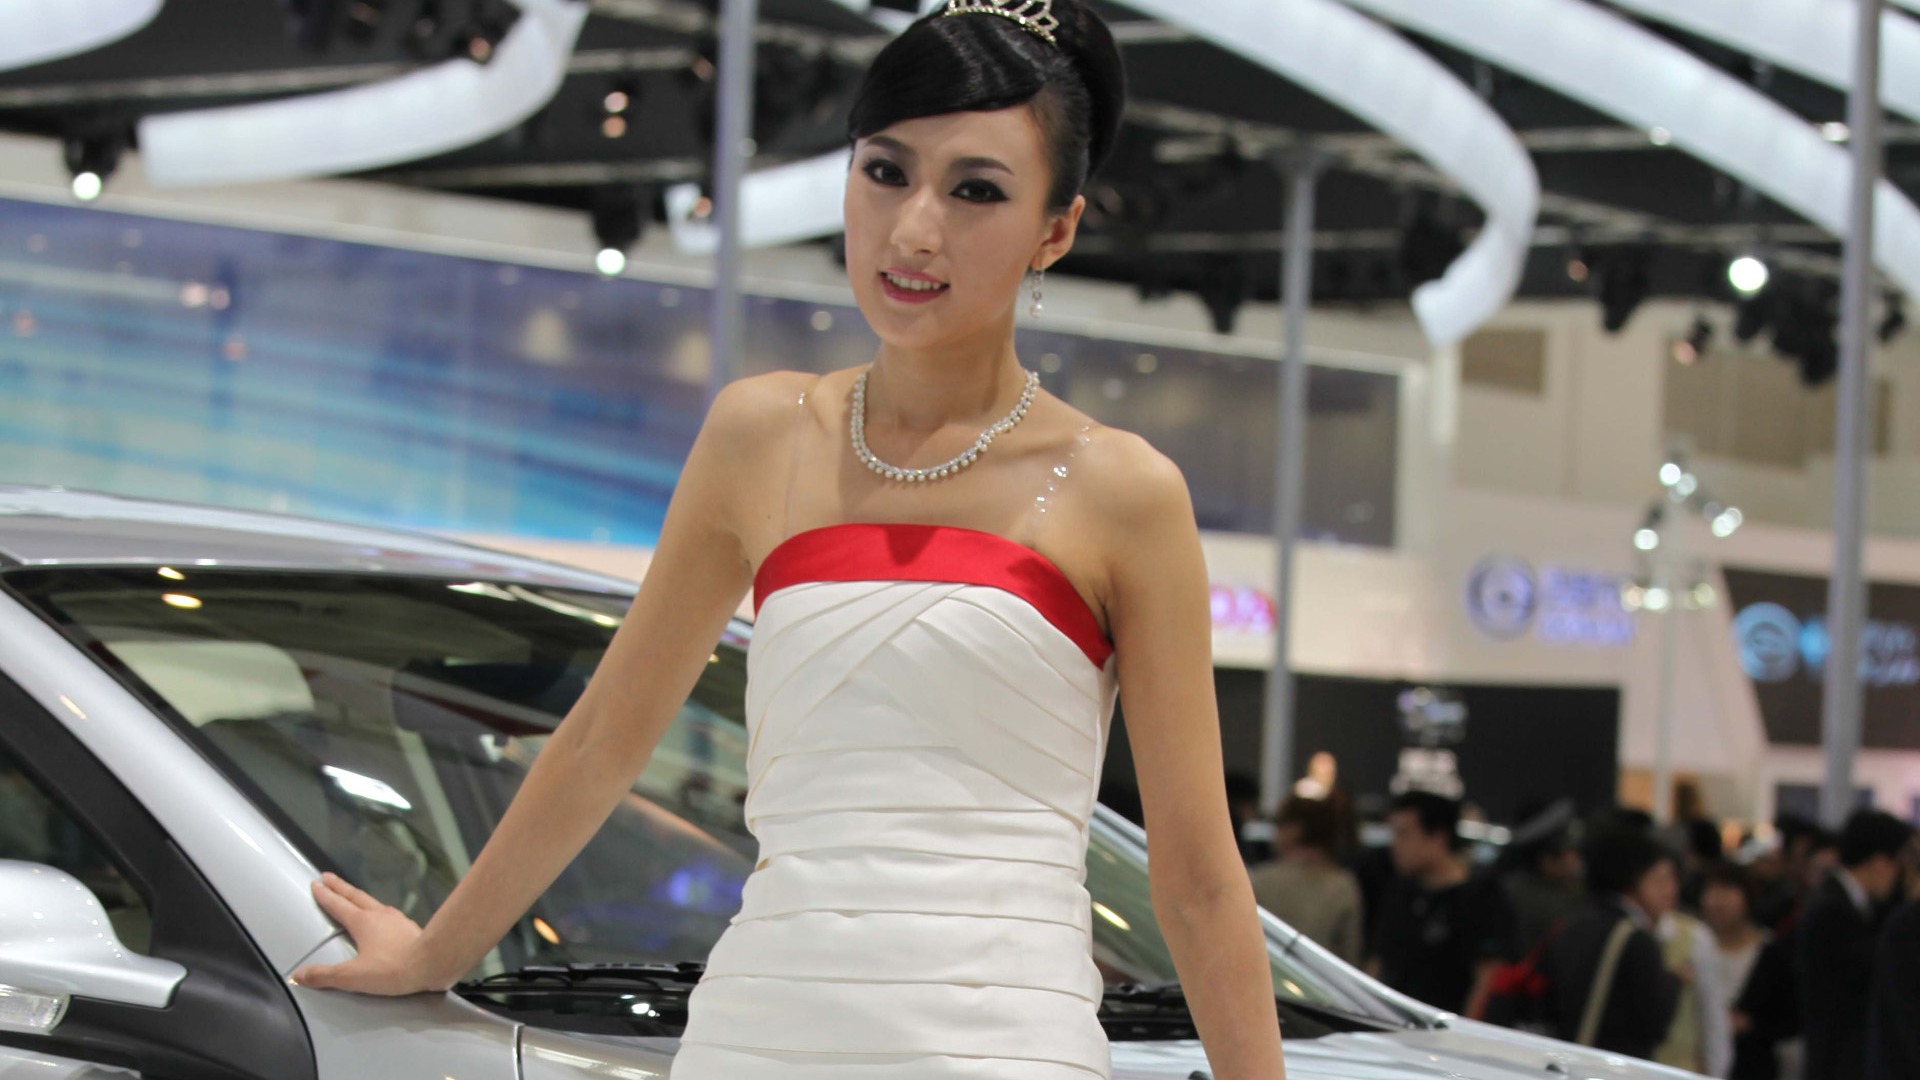 2010 v Pekingu Mezinárodním autosalonu krása (1) (vítr honí mraky práce) #39 - 1920x1080